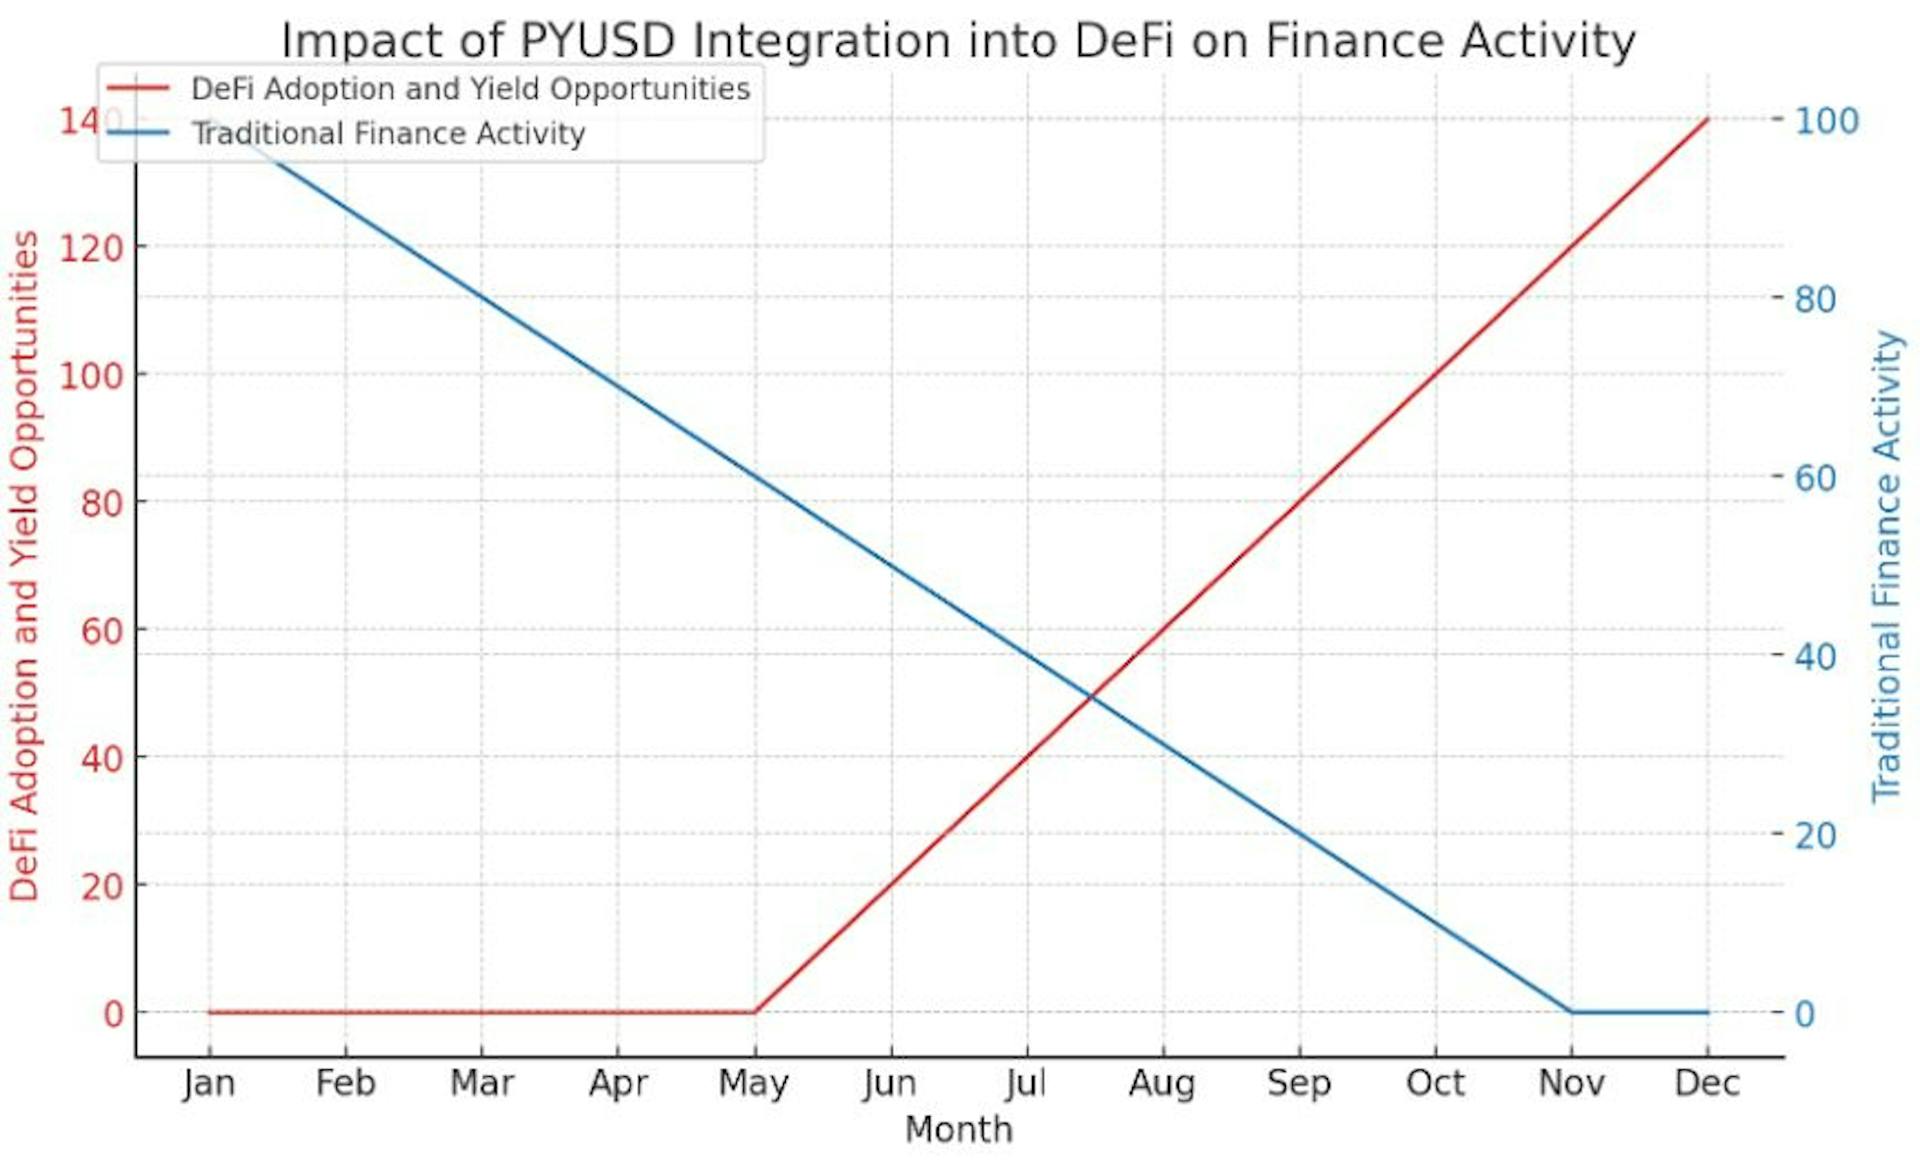 Biểu đồ trực quan hóa tác động giả định của việc tích hợp PYUSD vào hệ sinh thái DeFi, cho thấy sự gia tăng đáng kể trong việc áp dụng DeFi và mang lại cơ hội theo thời gian.